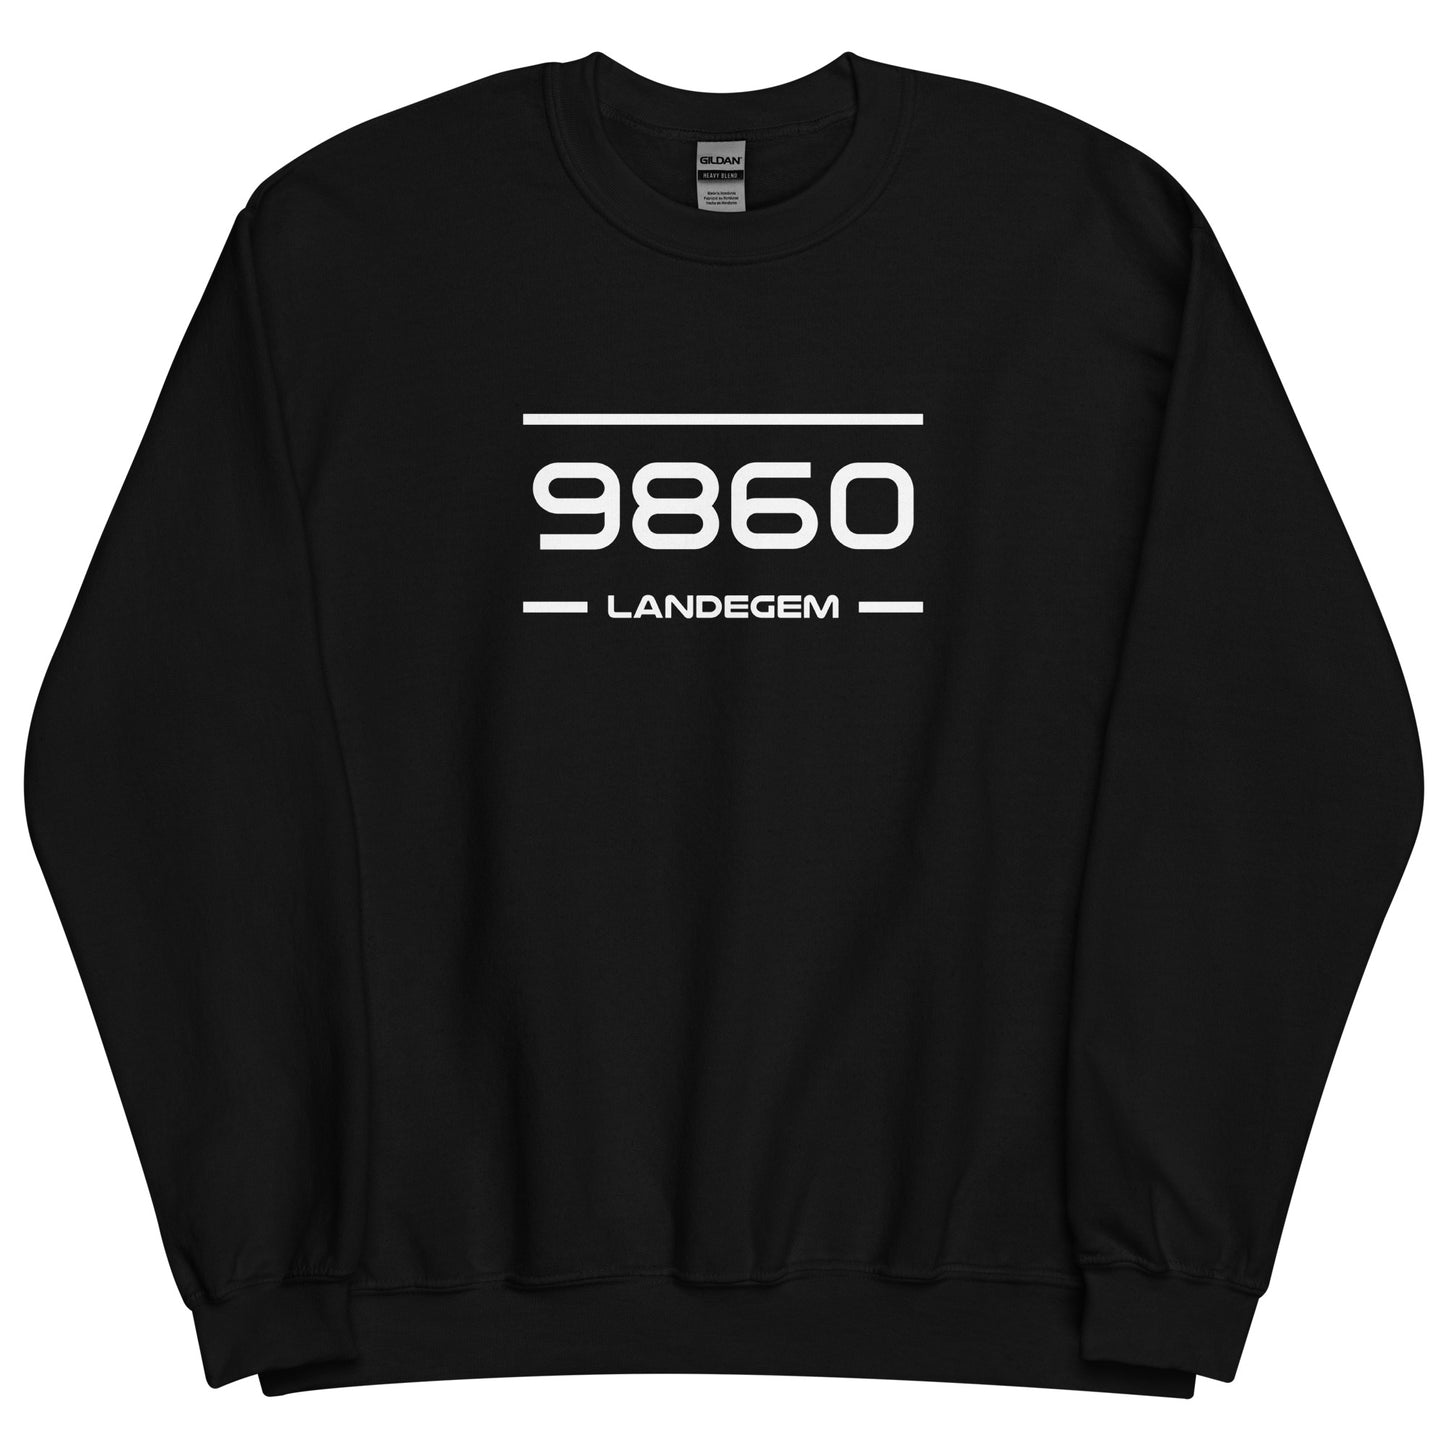 Sweater - 9860 - Landegem (M/V)